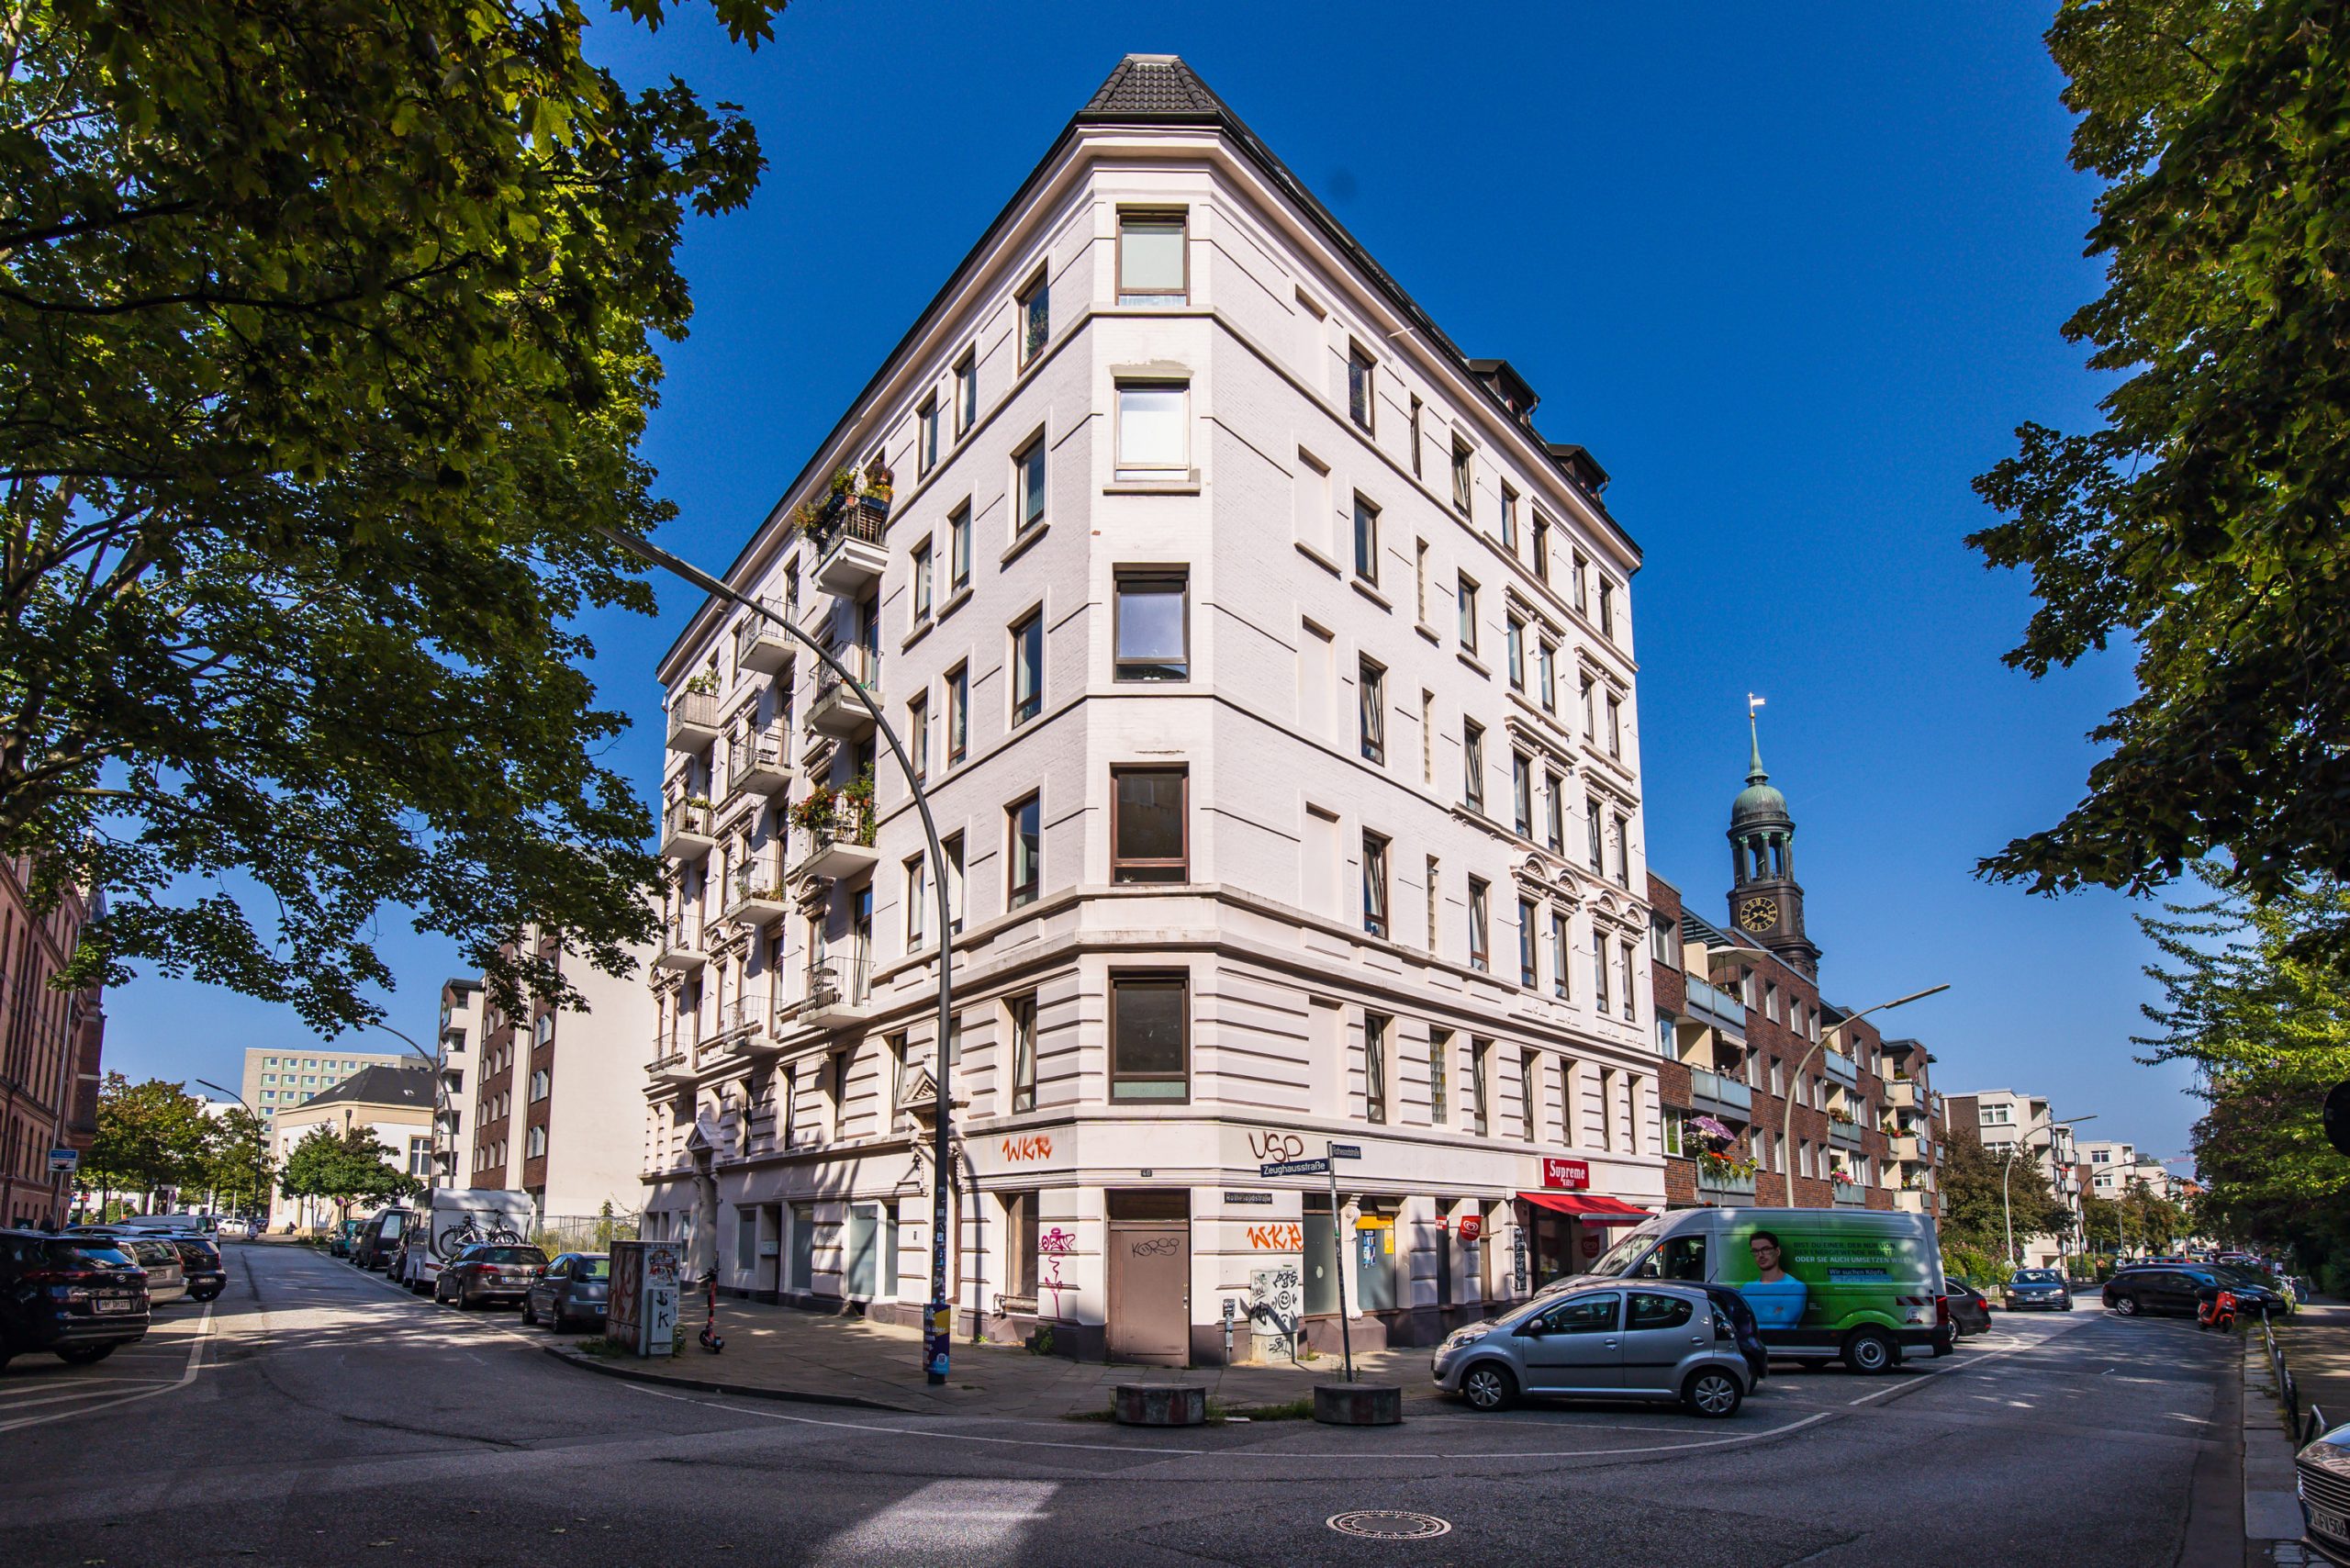 Wohnhaus Zeughausstraße, Gründerzeithaus mit weiß verputzter Fassade